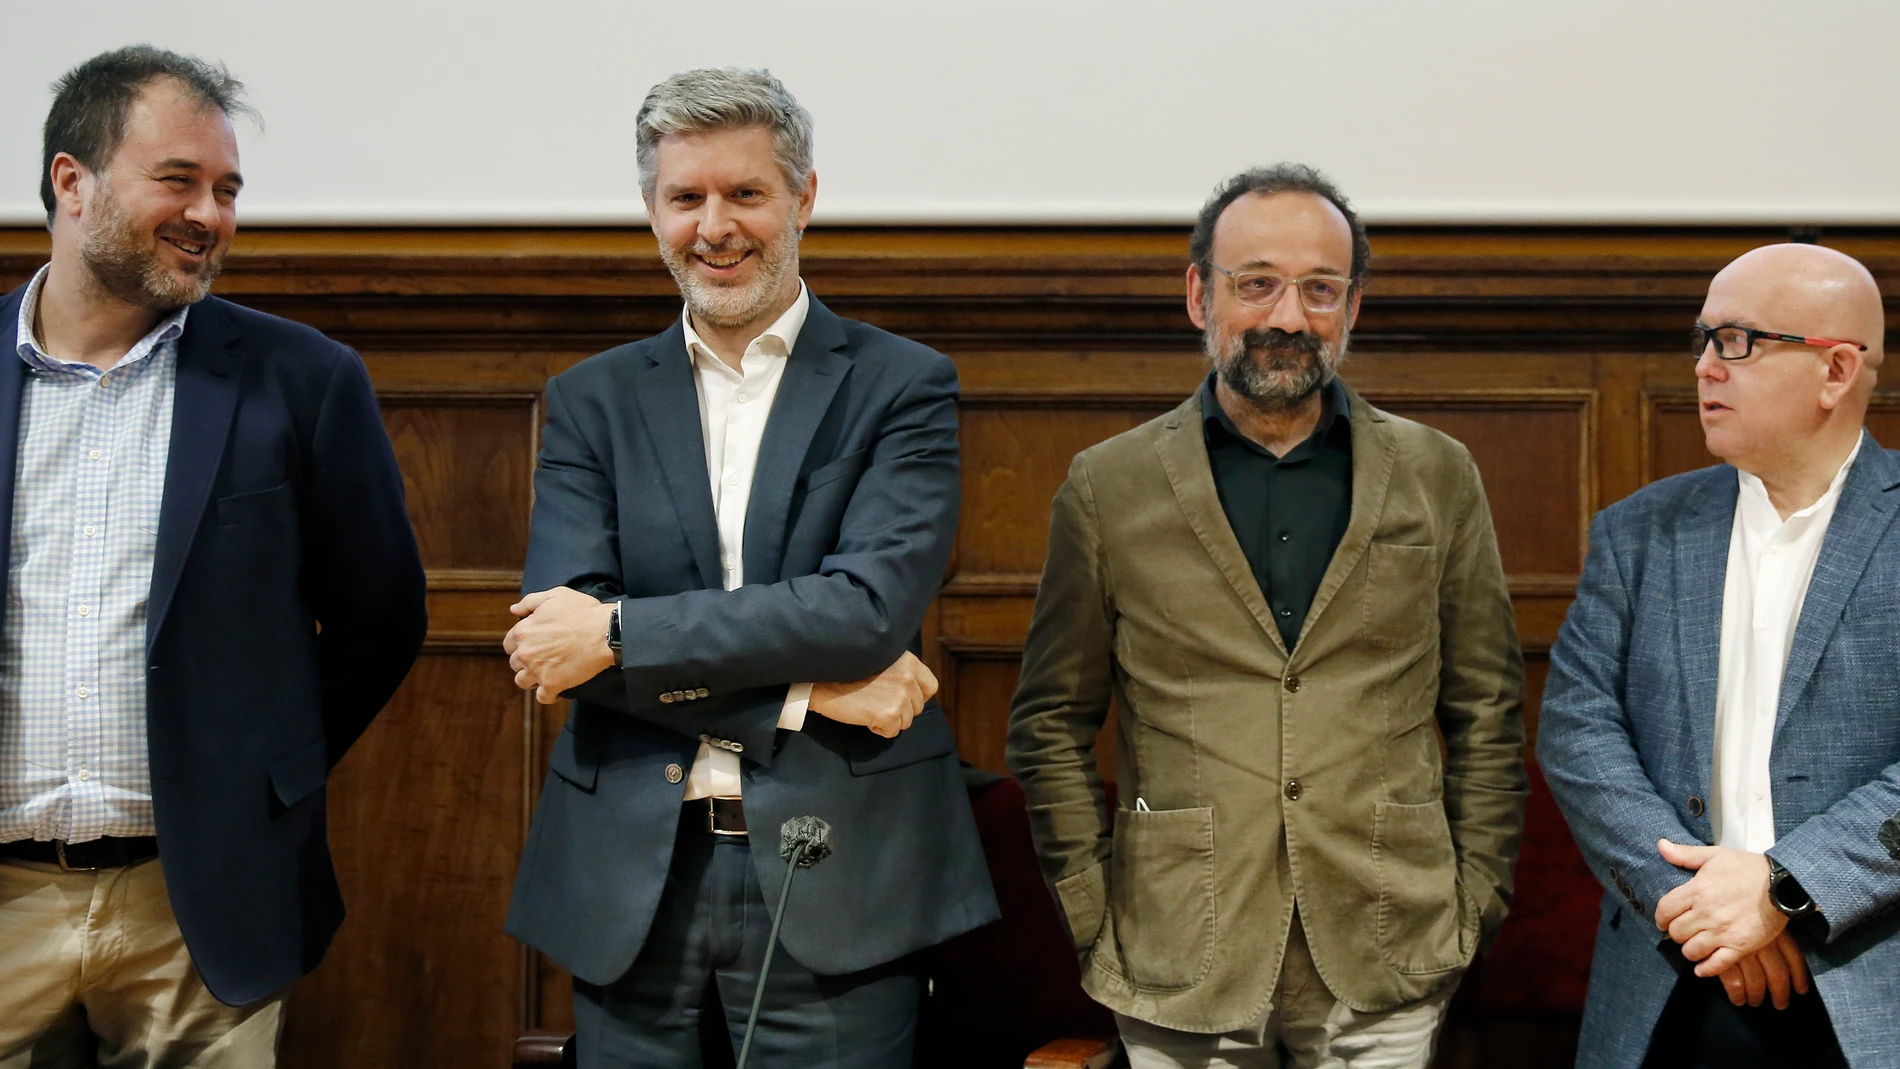 Los abogados Antonio Abat , Andreu Van Den Eynde, Benet Salellas y Gonzalo Boye, que representan a las entidades y partidos afectados por el caso de supuesto espionaje político